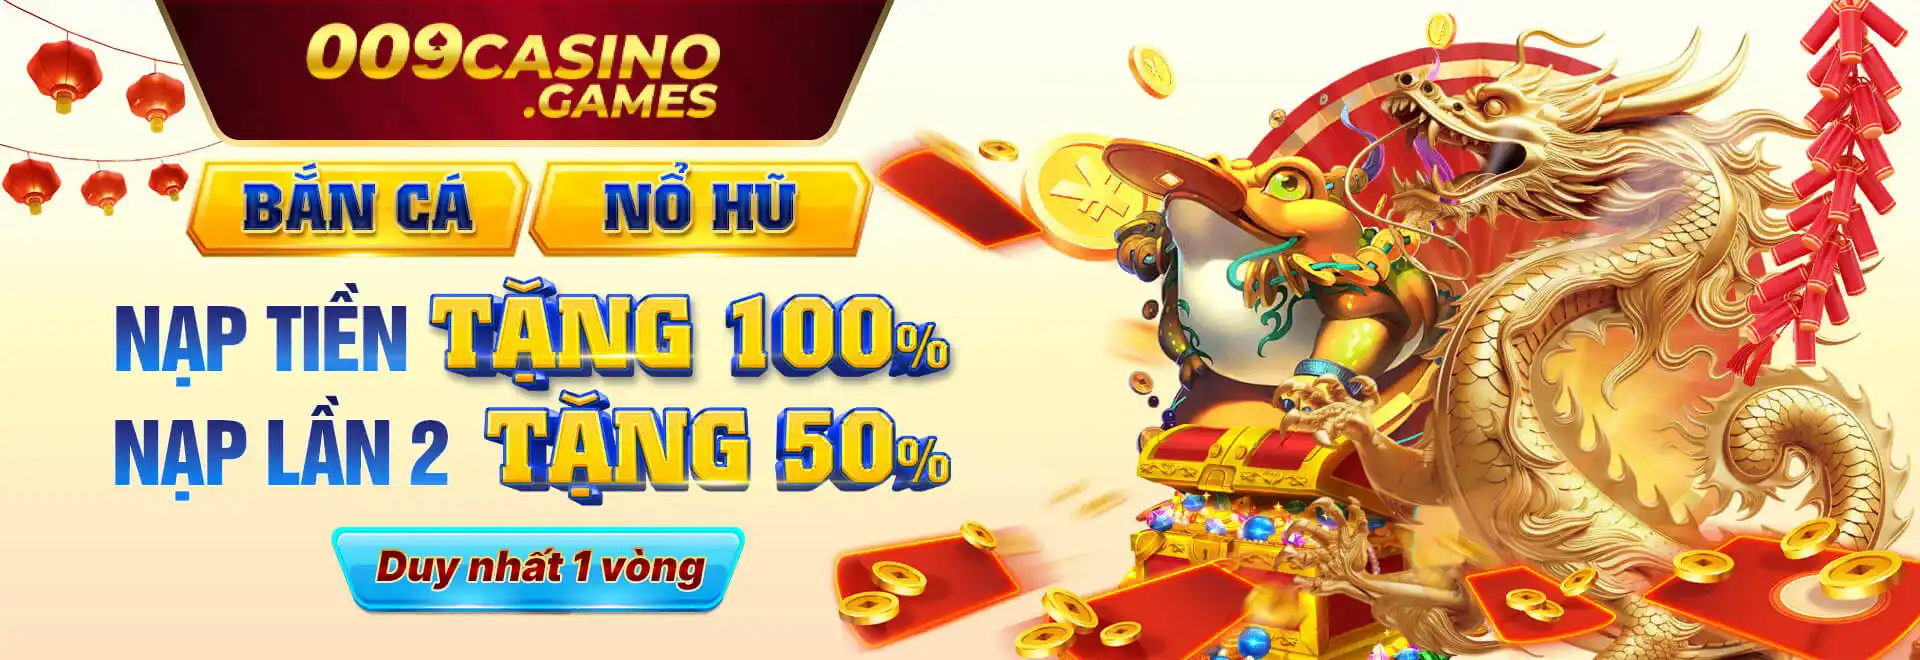 banner 009 casino 04